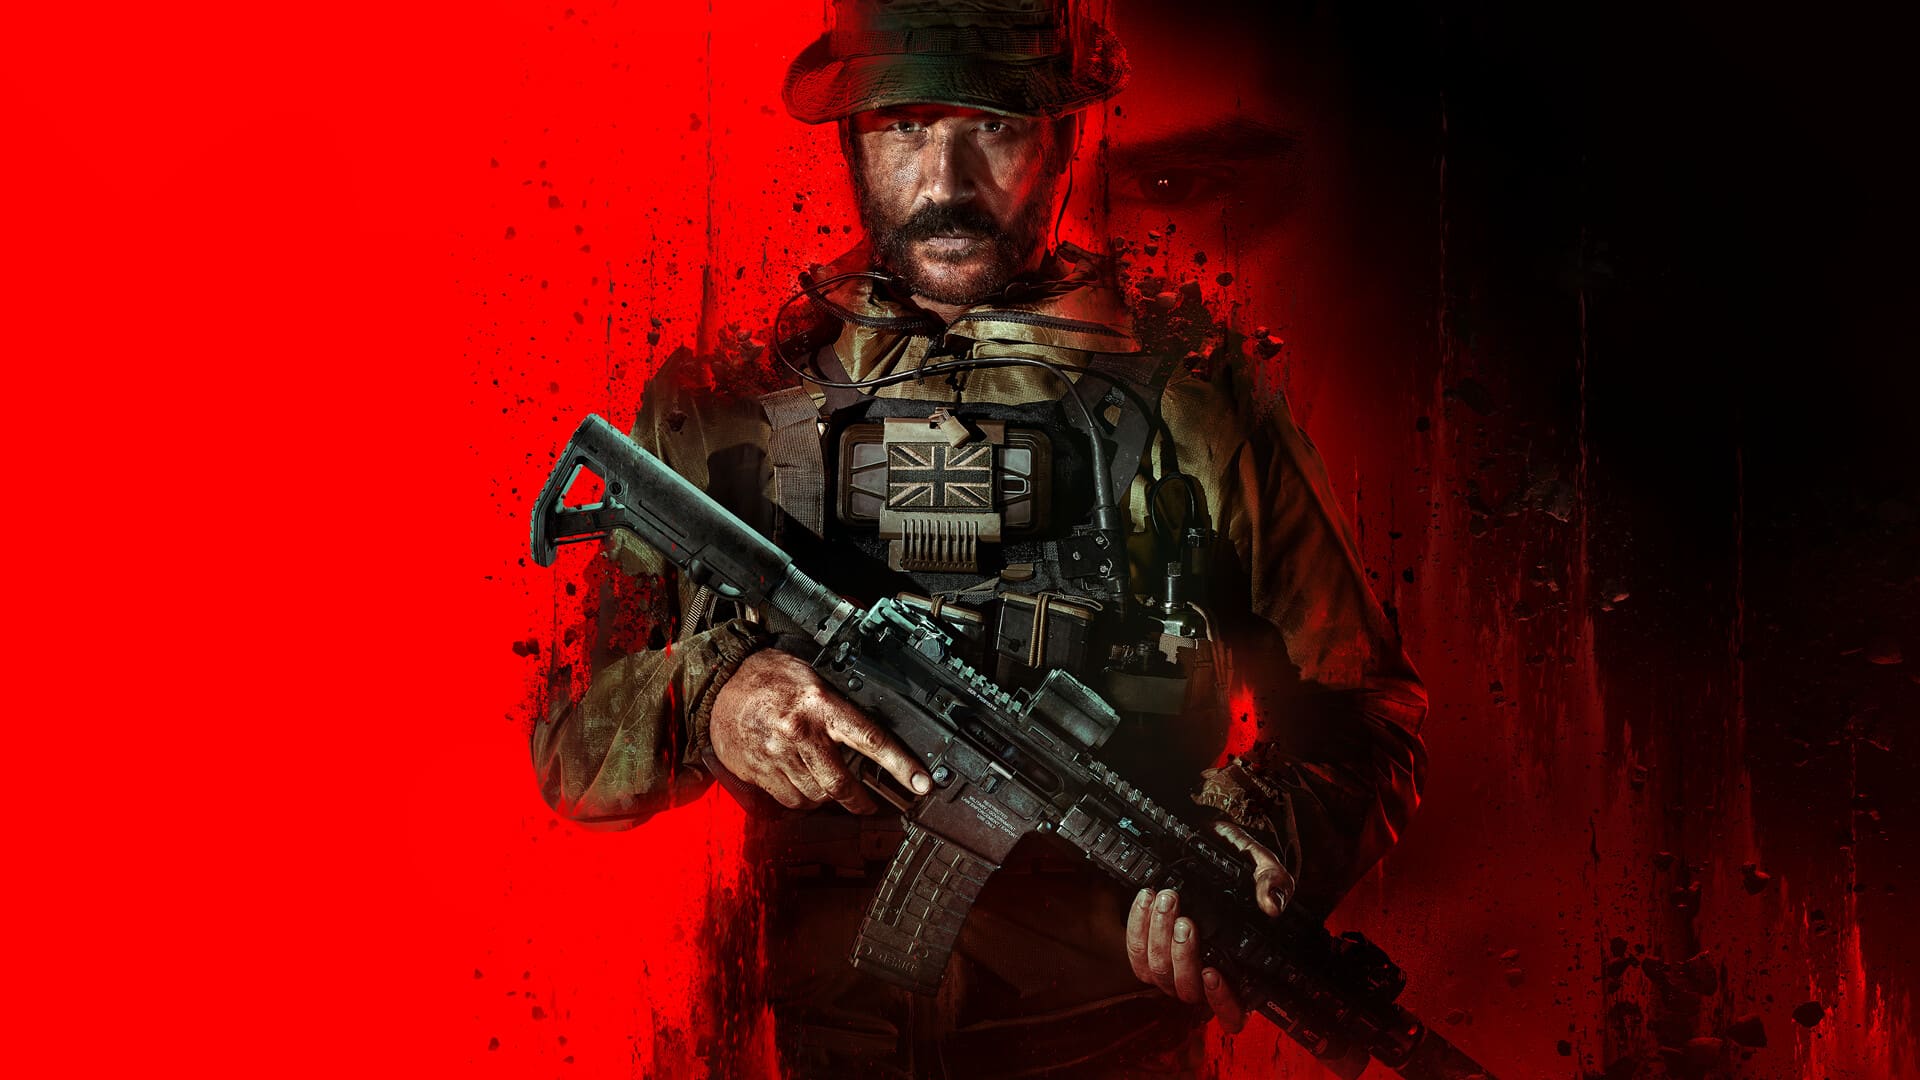 play3 Review: Modern Warfare 3 im Test: Call of Duty vor dem Abgrund?